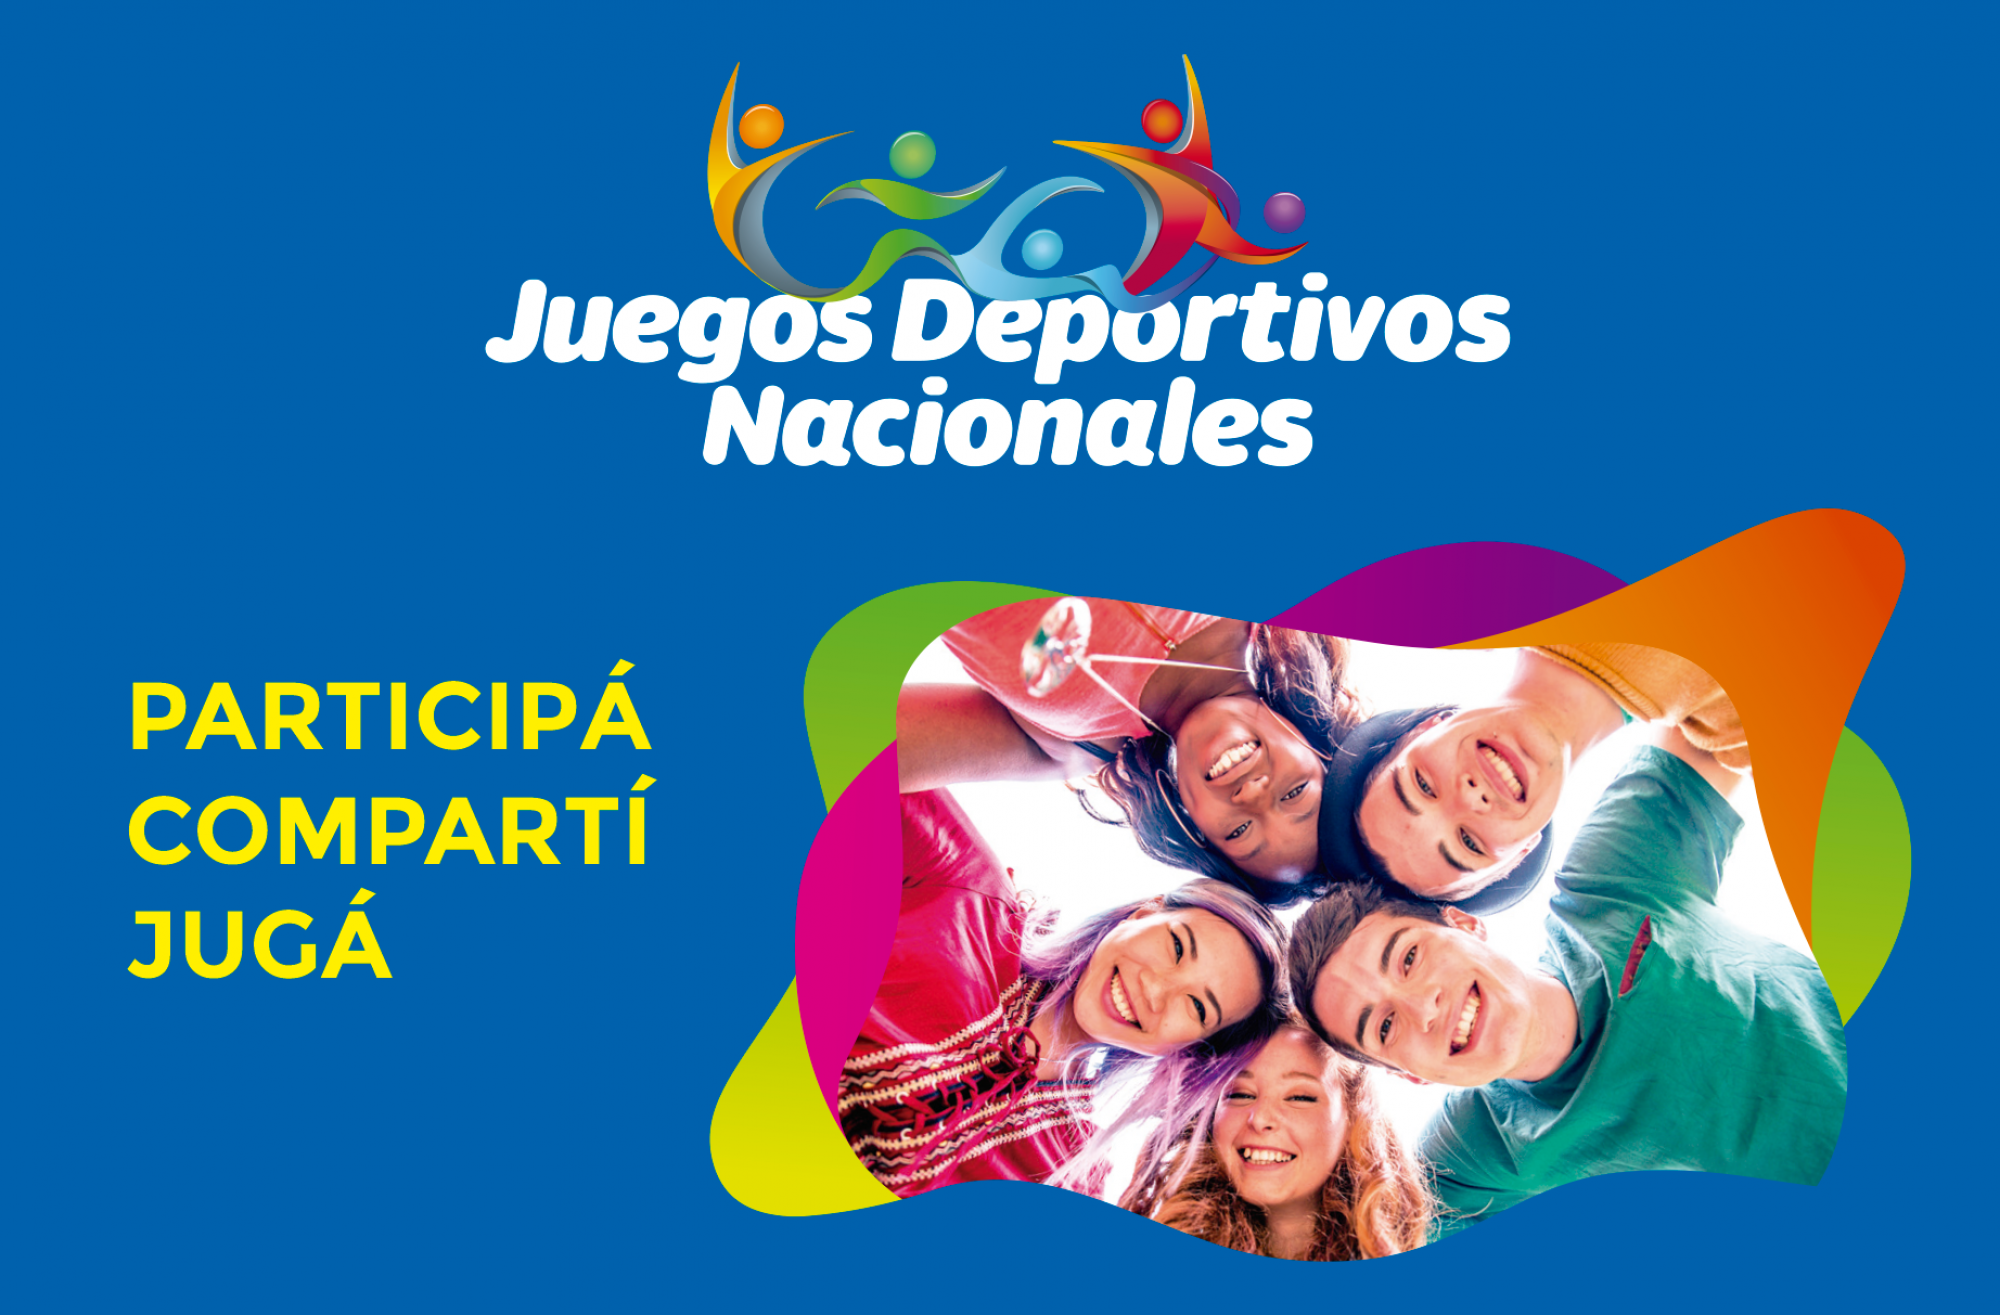 Jóvenes, profesores y Equipos Organizadores dan inicio a los Juegos Deportivos Nacionales 2018.